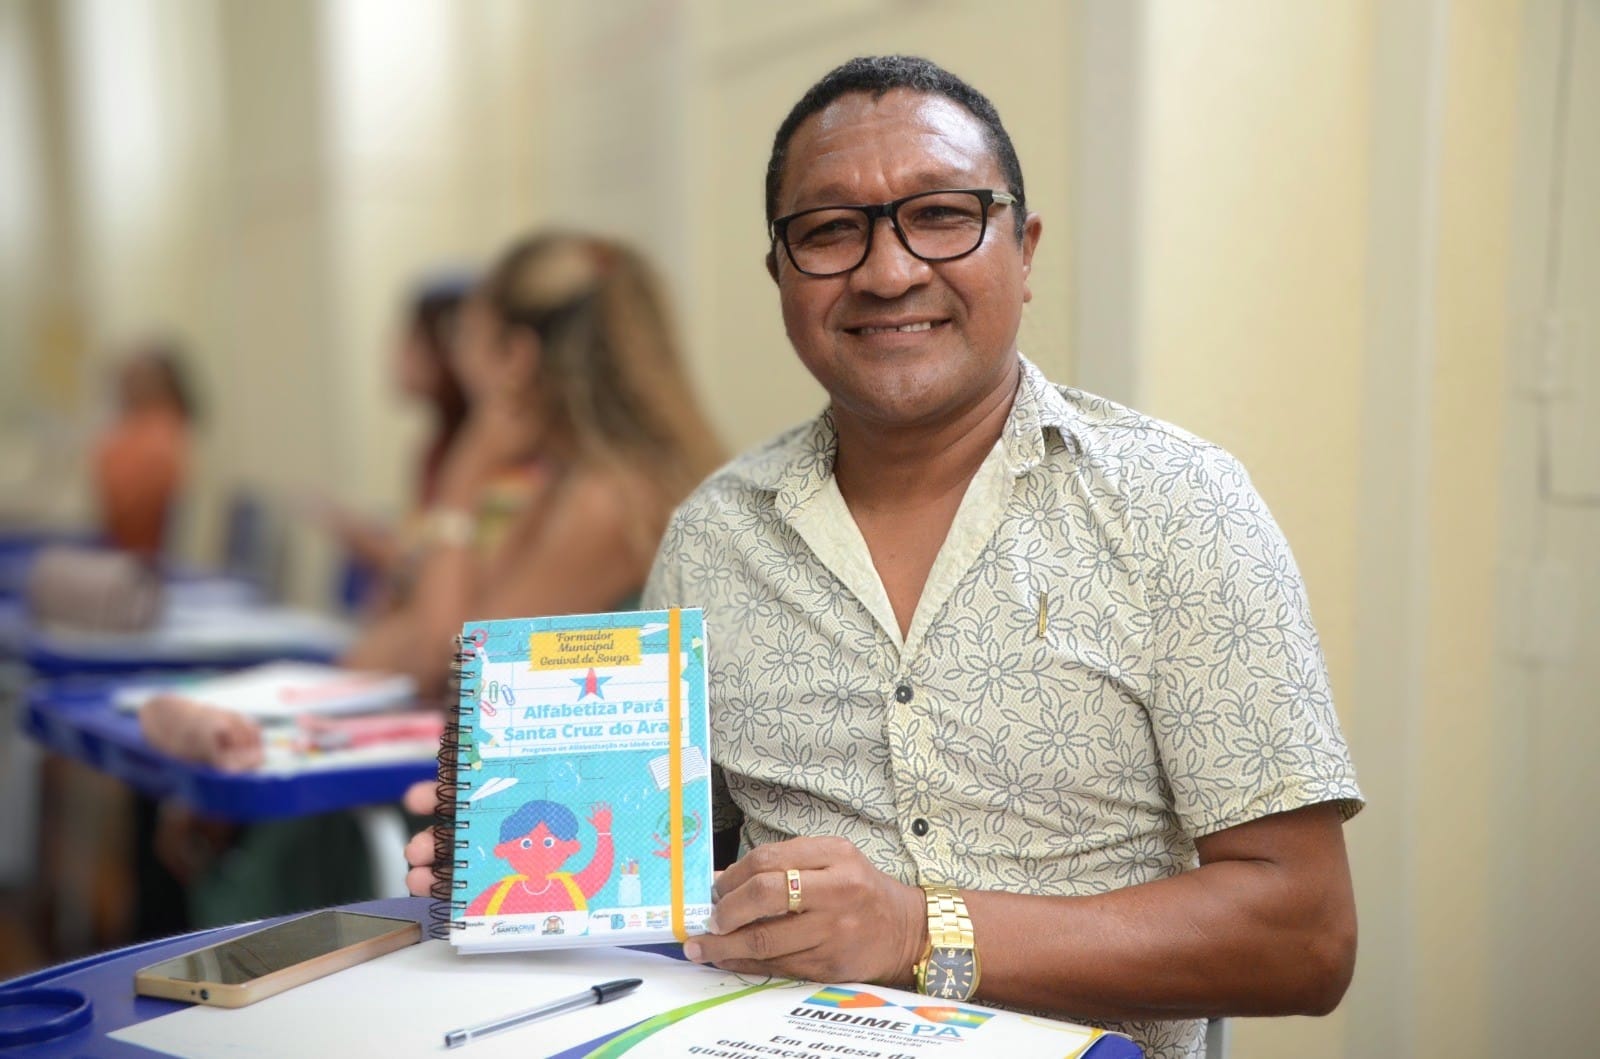 Genival Martins, formador municipal do programa Alfabetiza Pará em Santa Cruz do Arari - Foto: Rai Pontes / Ascom Seduc